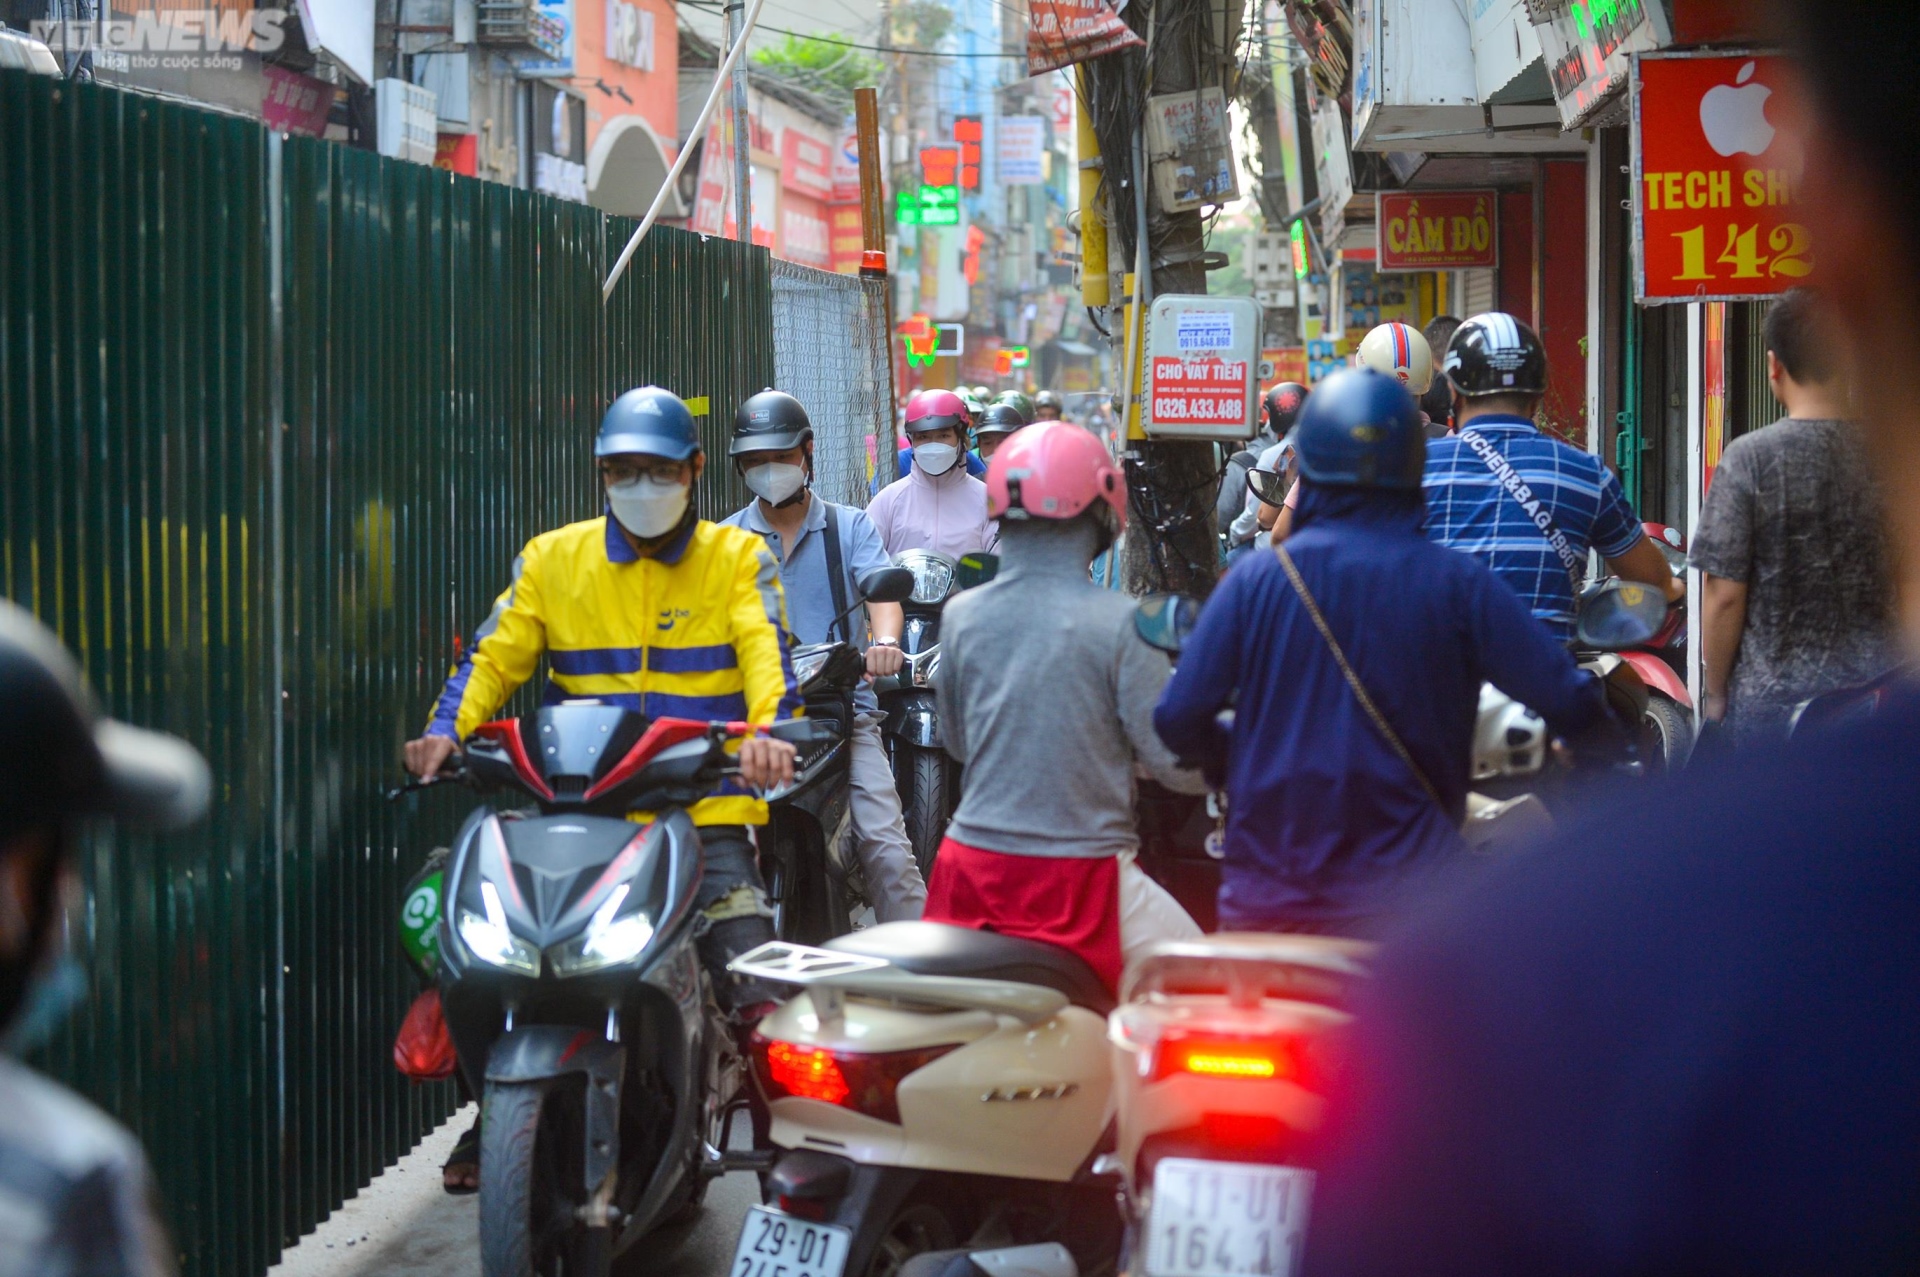 Rào tôn chắn gần hết lòng đường ở Hà Nội, dân khổ sở luồn lách đi qua - Ảnh 7.